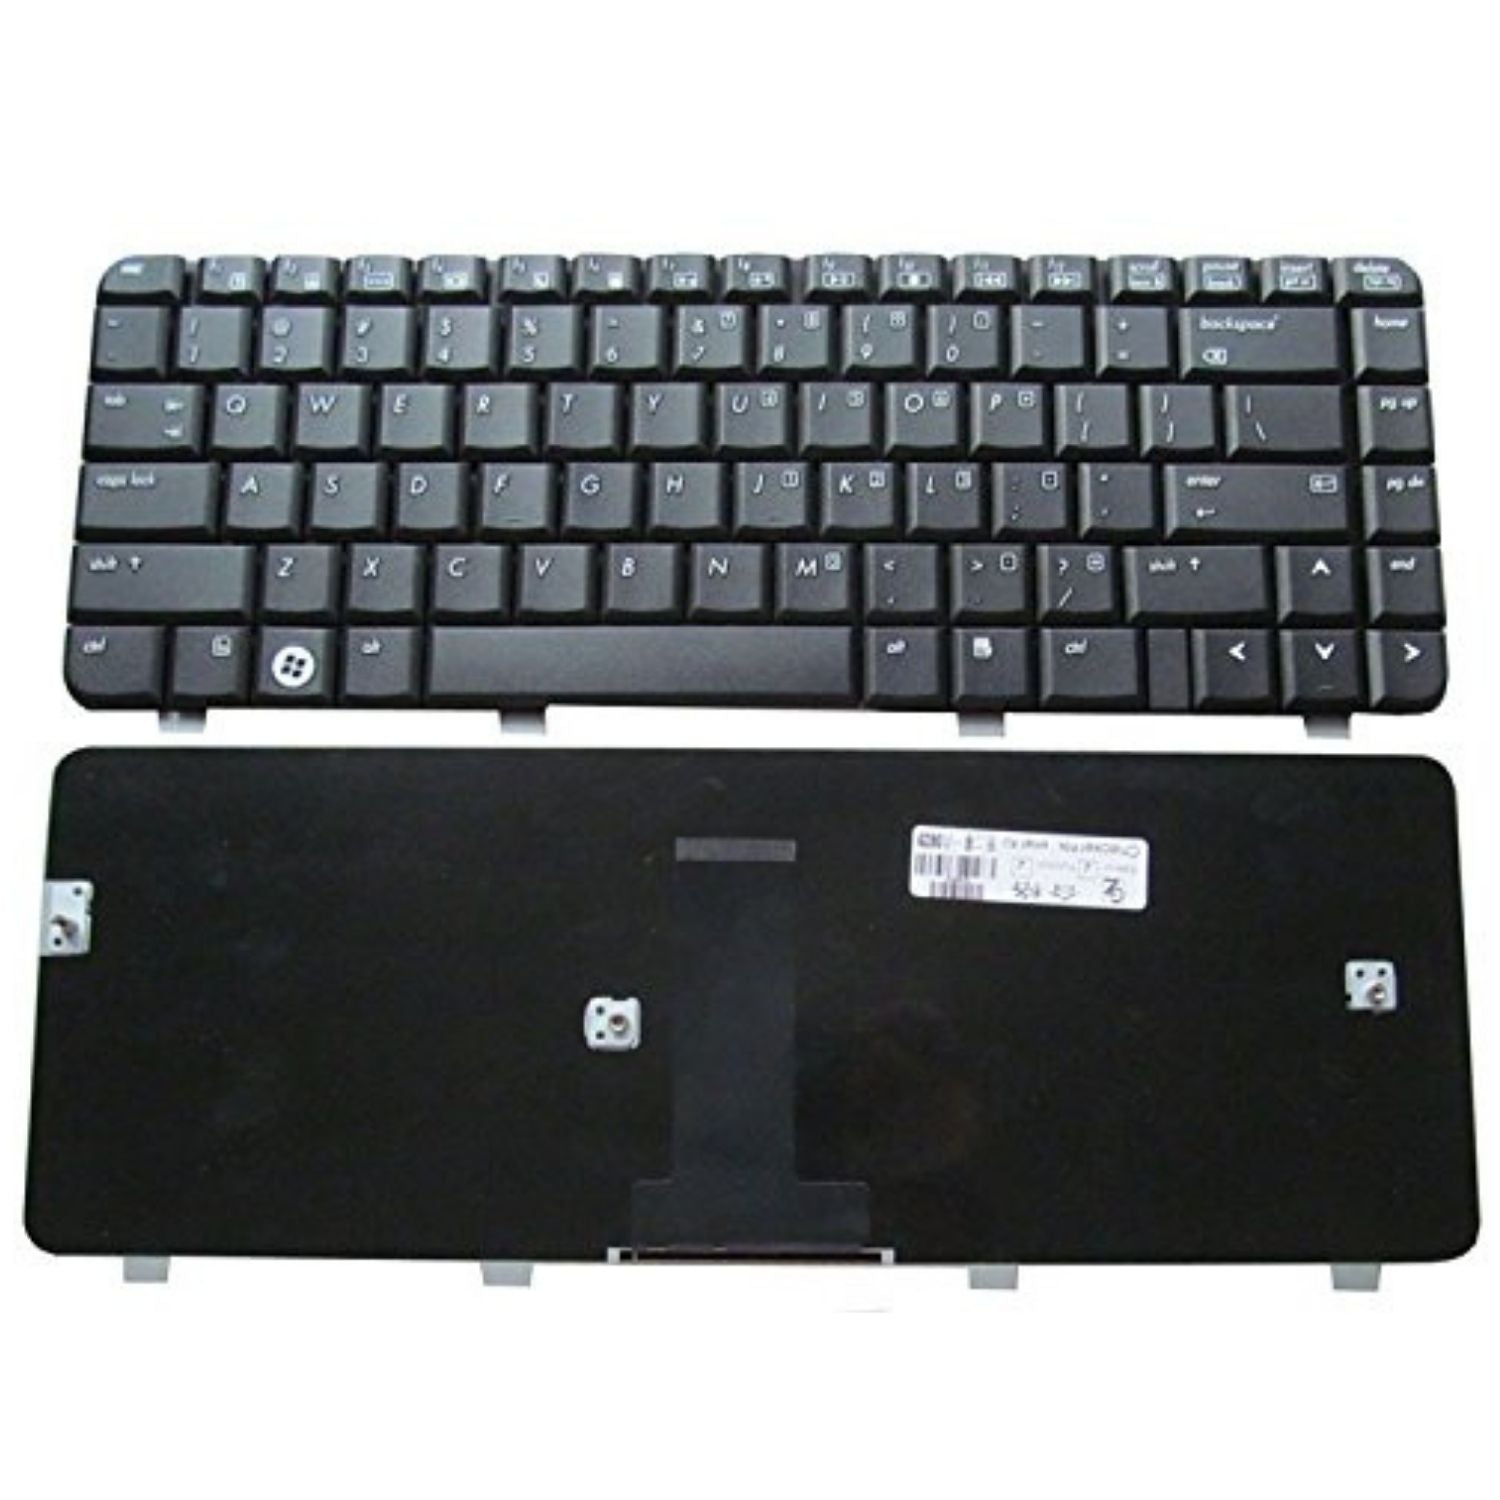 Hp laptop keyboard for PK1303V01X0 Compaq Presario CQ40 CQ41 CQ45 DV4 PN MP-05583US-6983 PK1303V0500